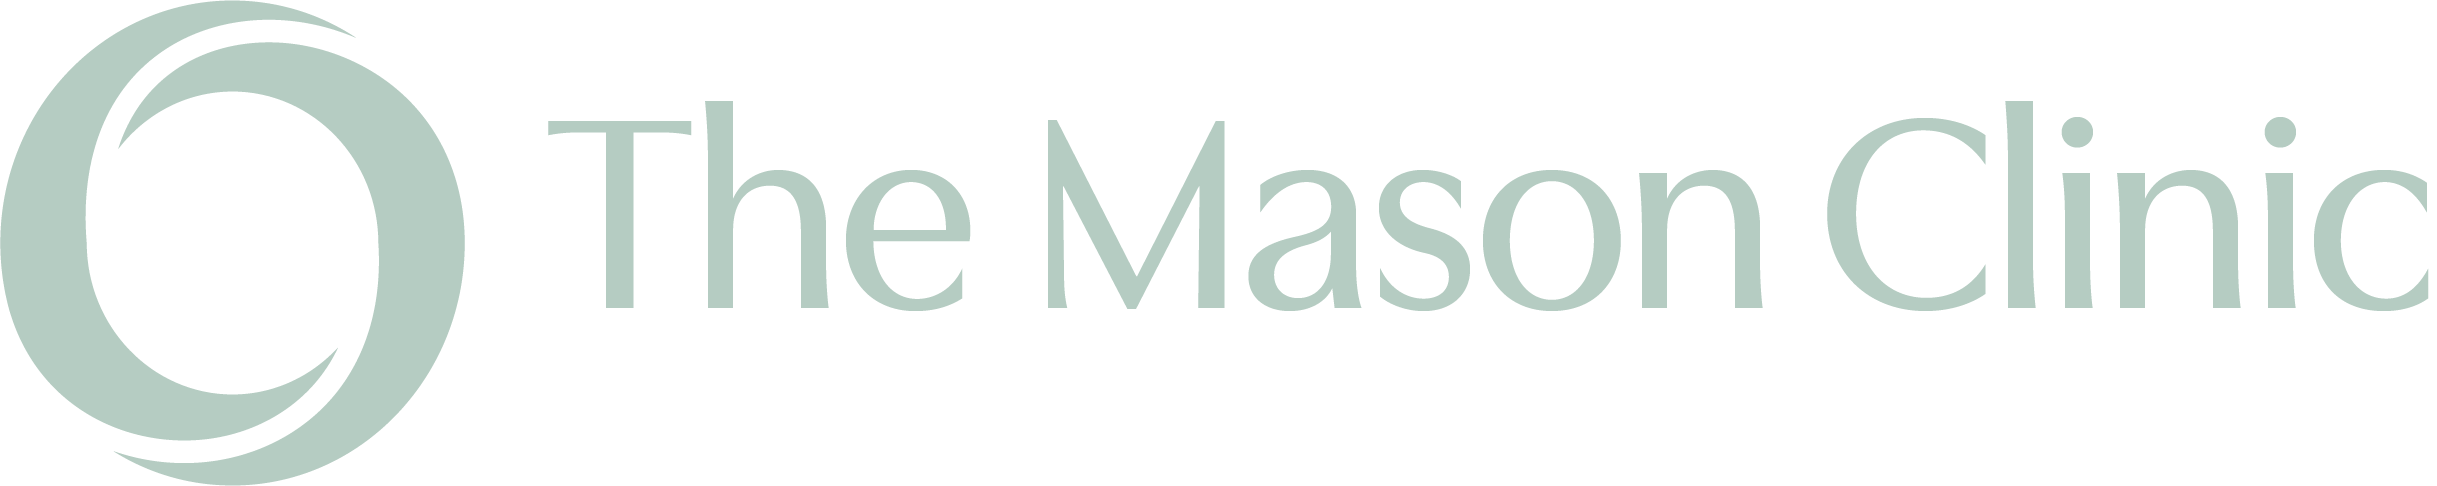 Mason_Clinic_Logo_Master